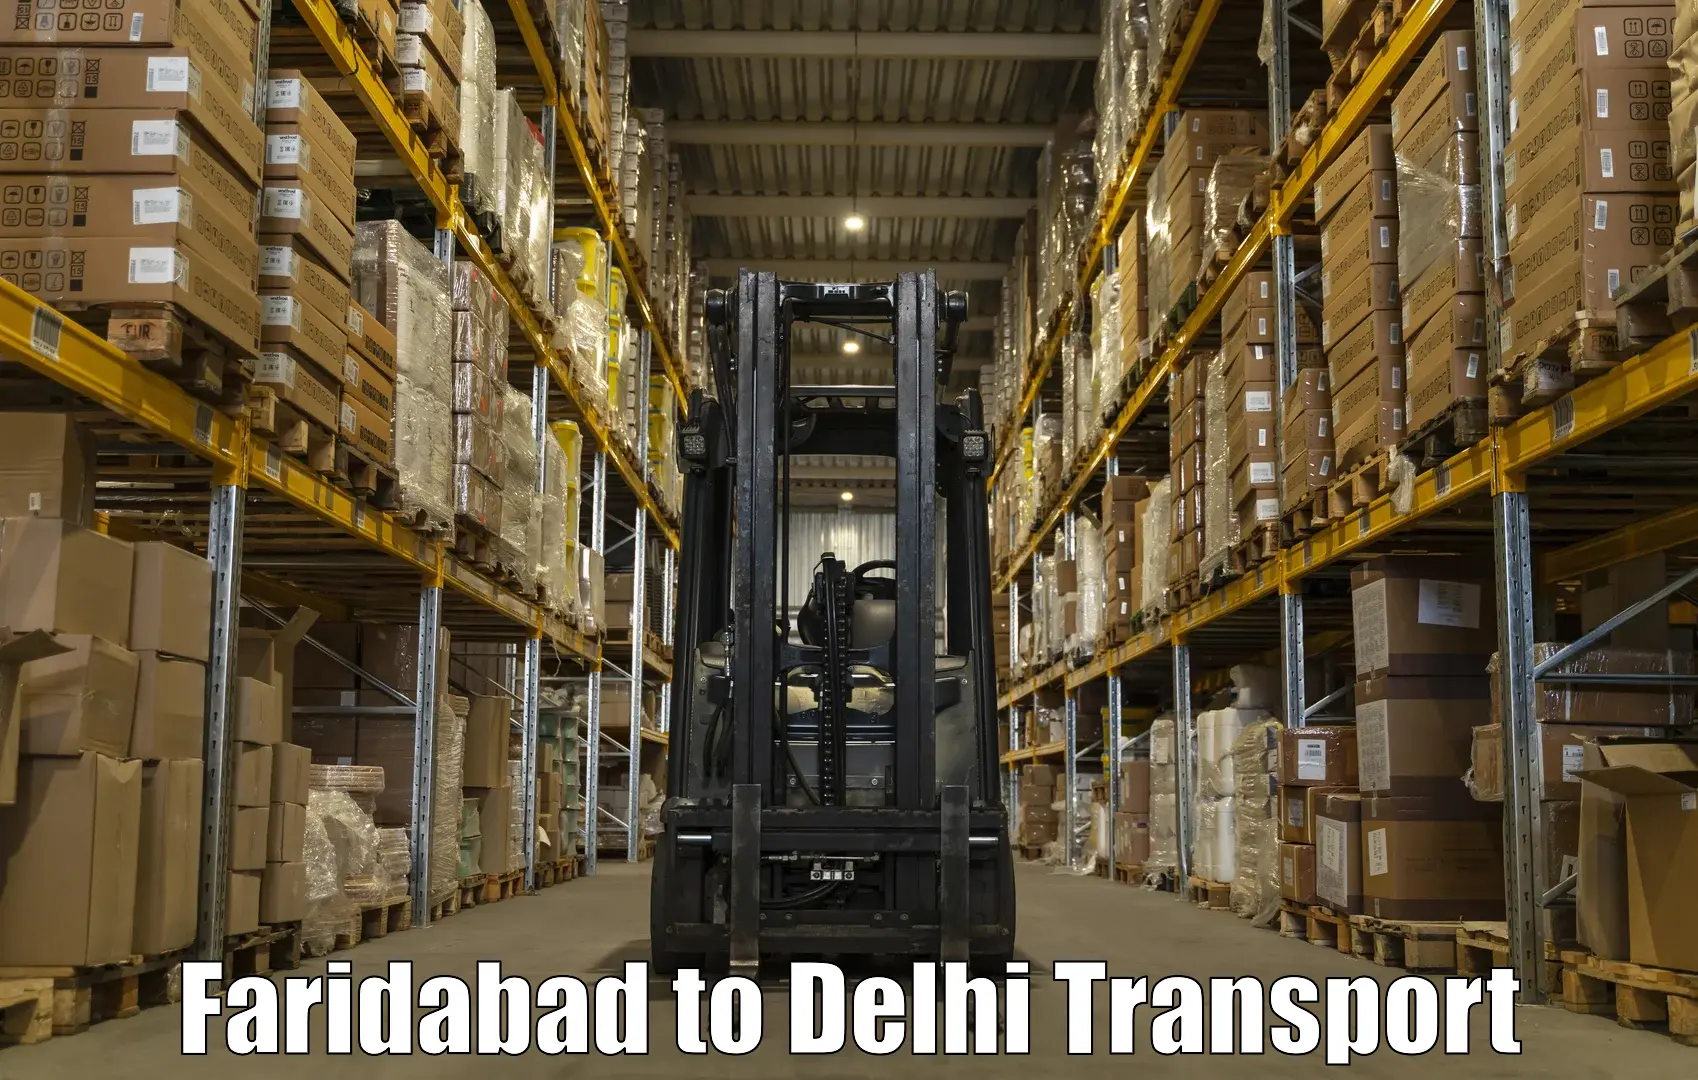 Shipping partner Faridabad to NCR